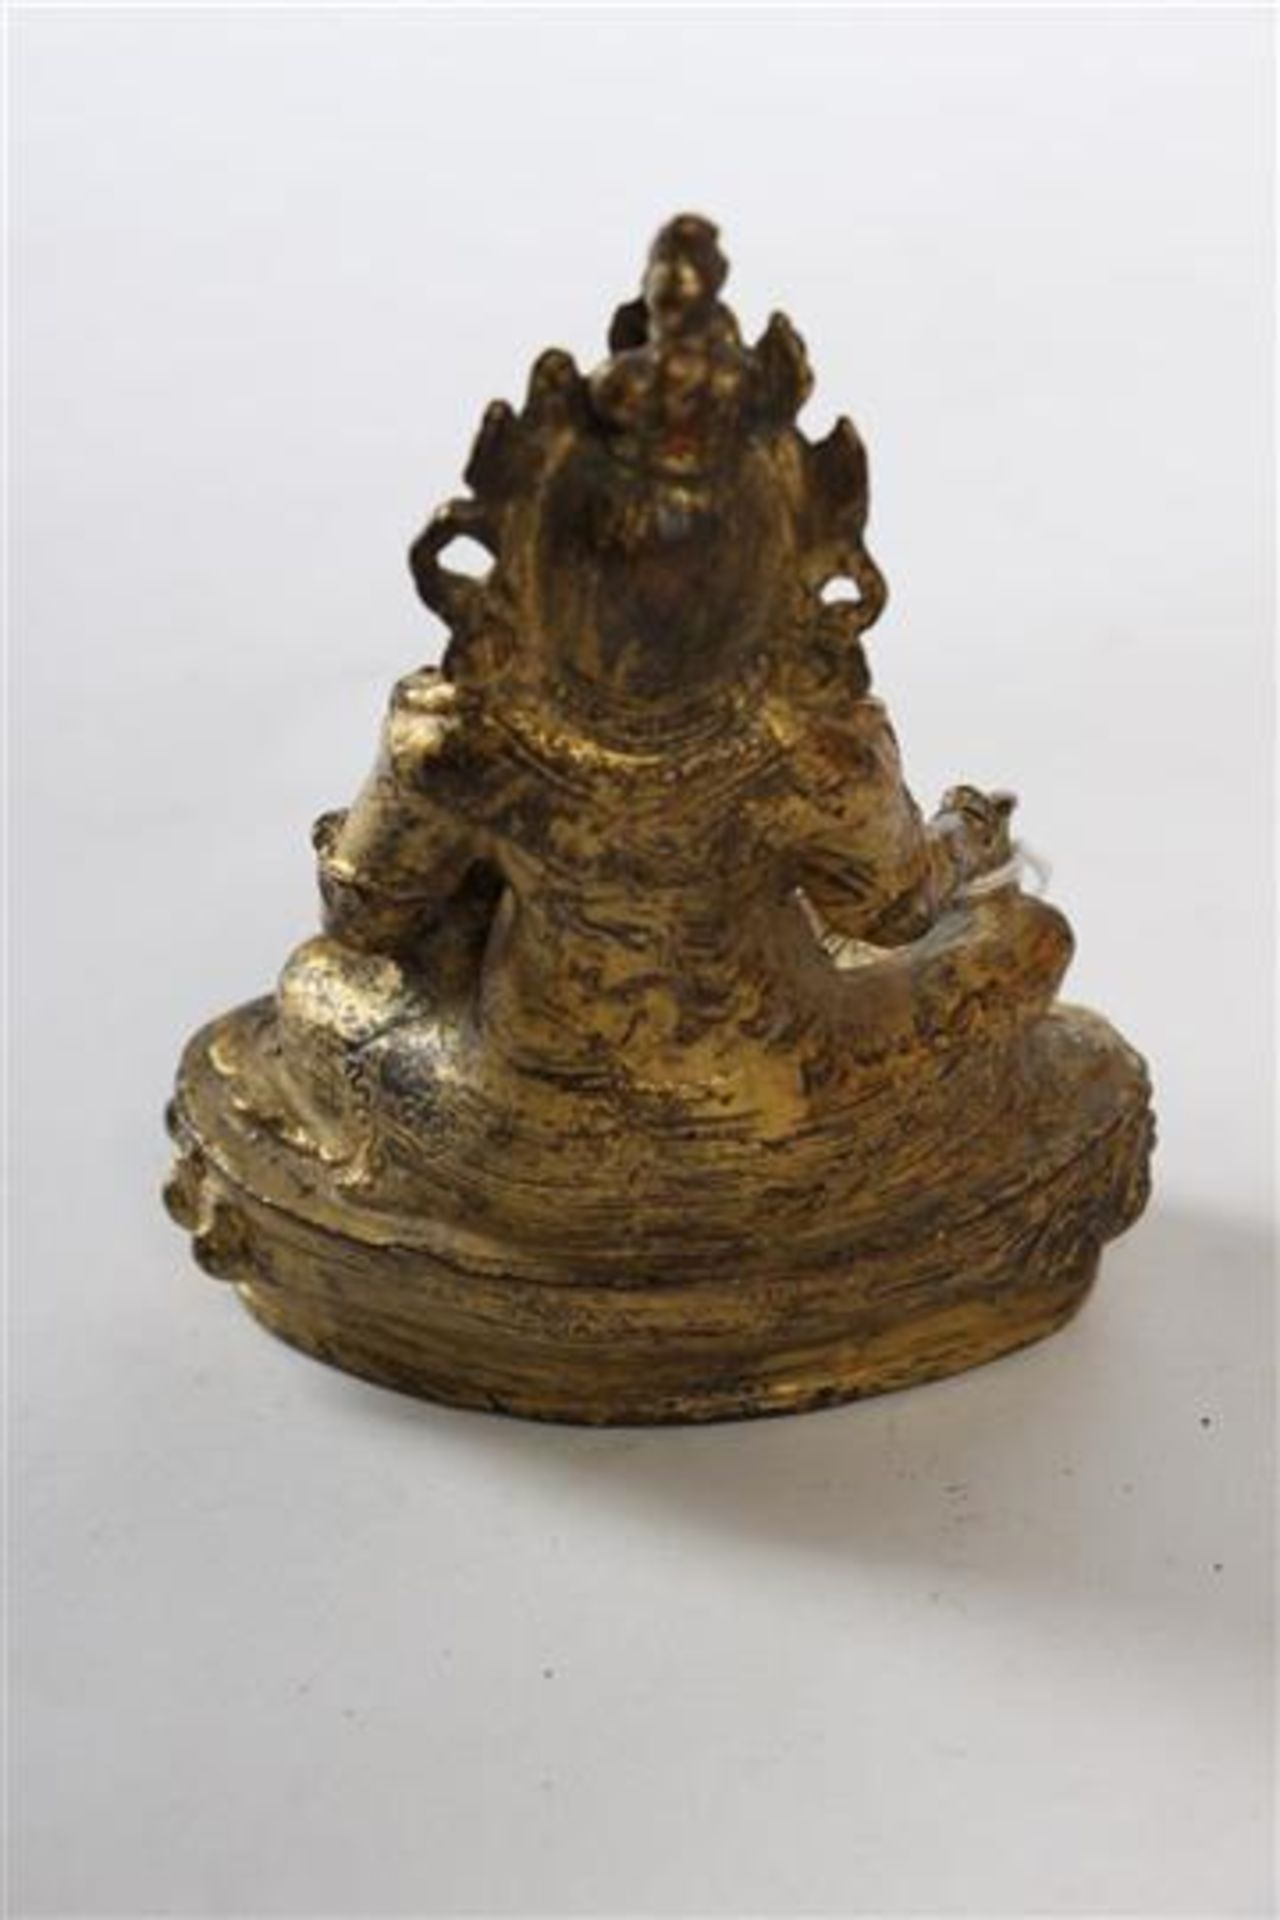 Koudvergulde bronzen Boeddha. H: 14 cm. - Bild 3 aus 3